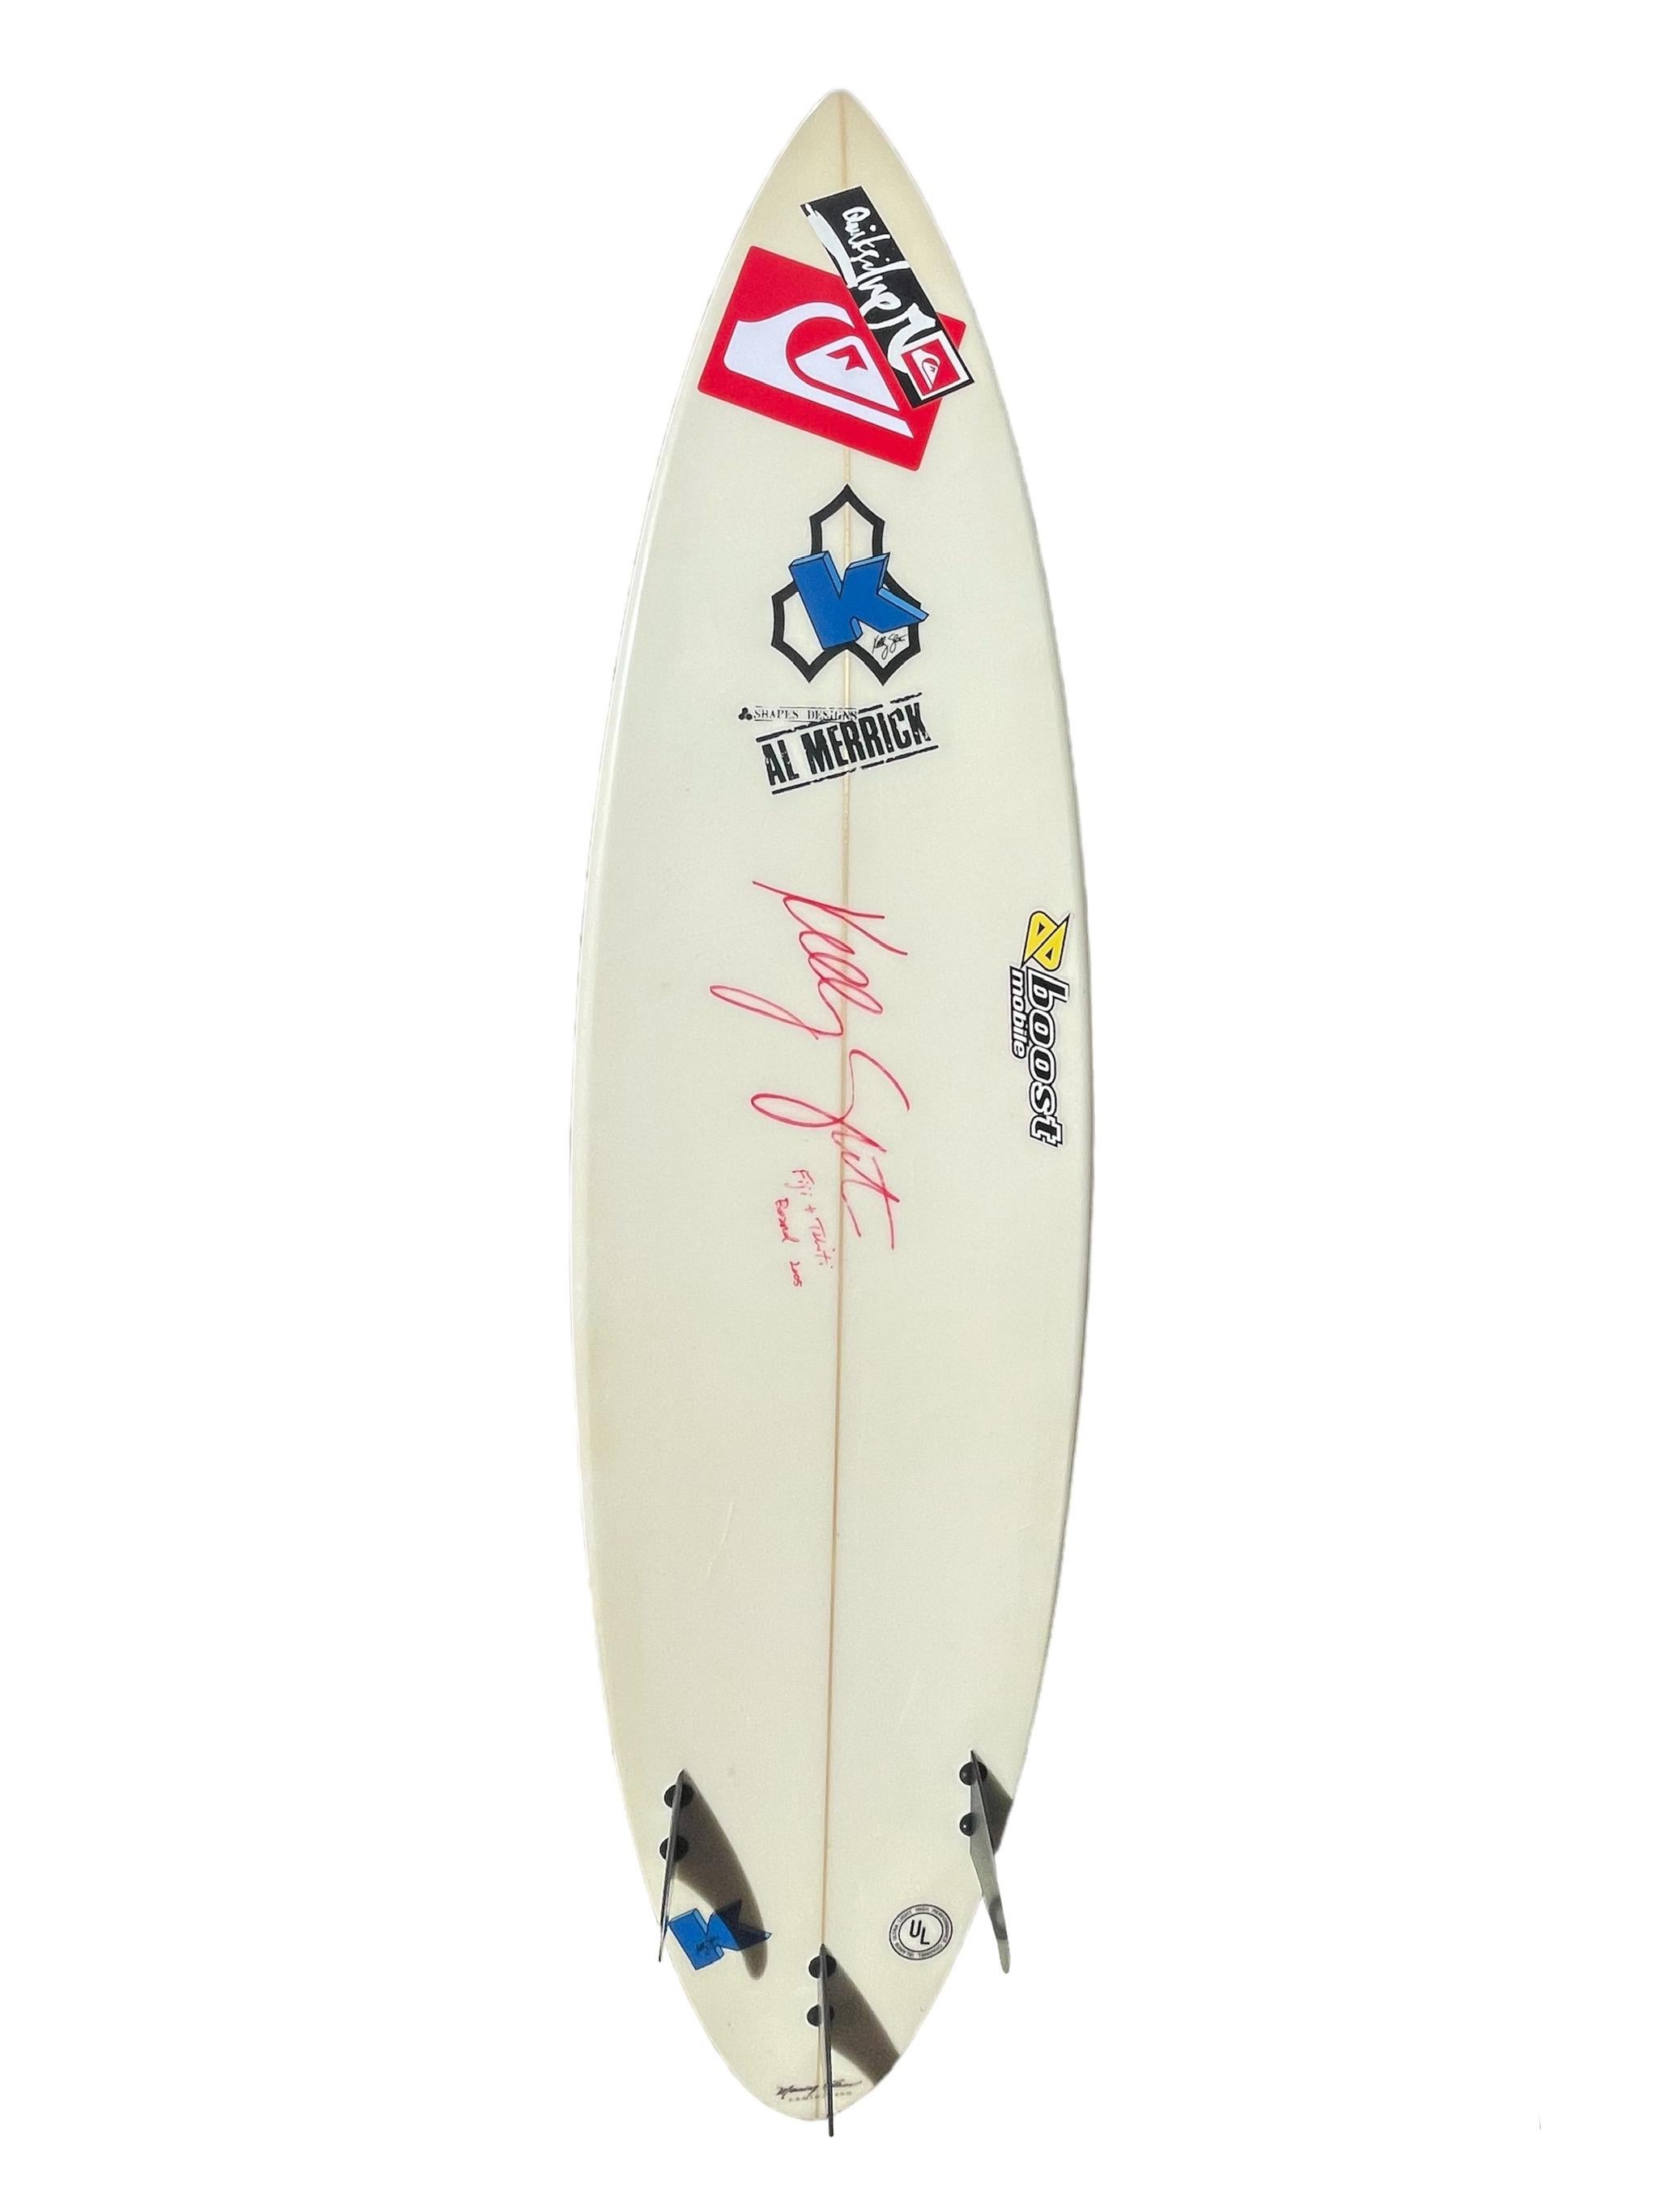 Planche de surf personnelle de Kelly Slater, 11 fois champion du monde, utilisée sur le circuit mondial de surf. Façonné en 2005 par le célèbre Al Merrick. Cette planche de surf représente un élément important de l'histoire des champions du monde de